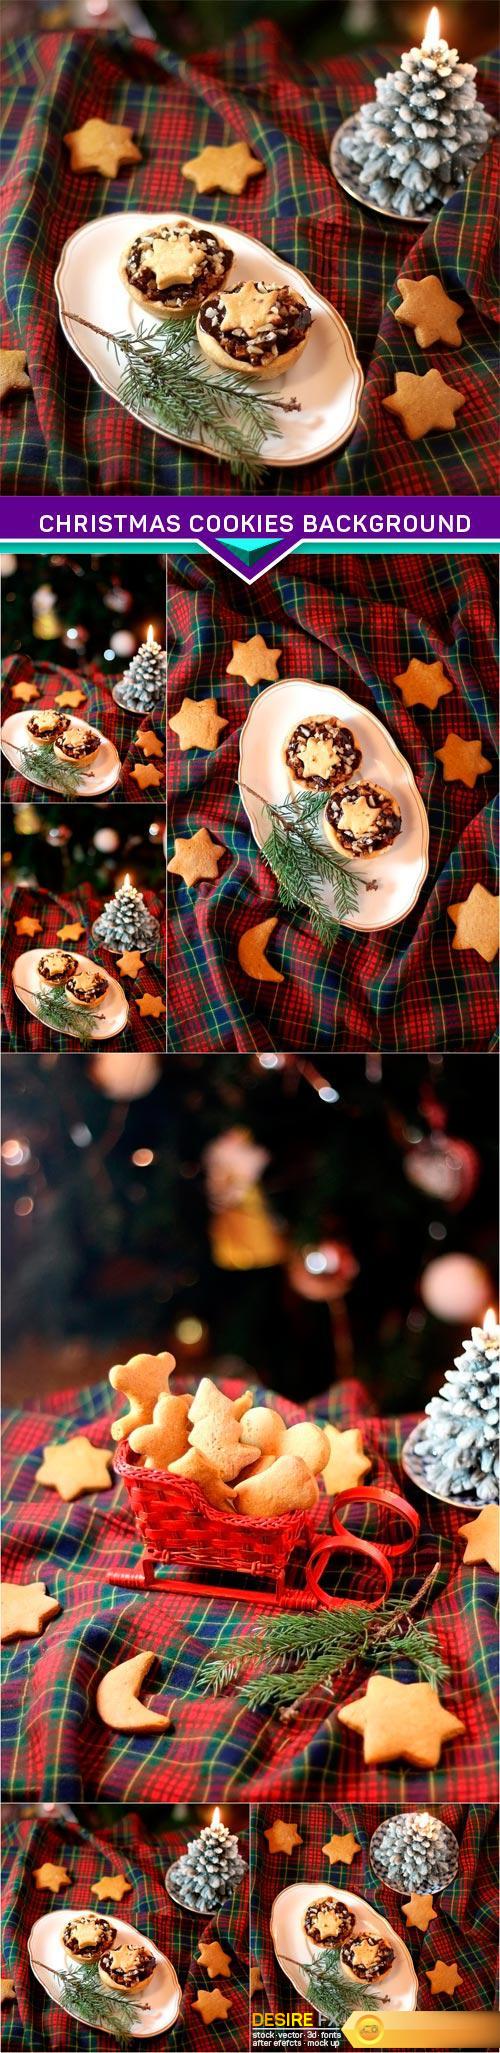 Christmas cookies background 6X JPEG